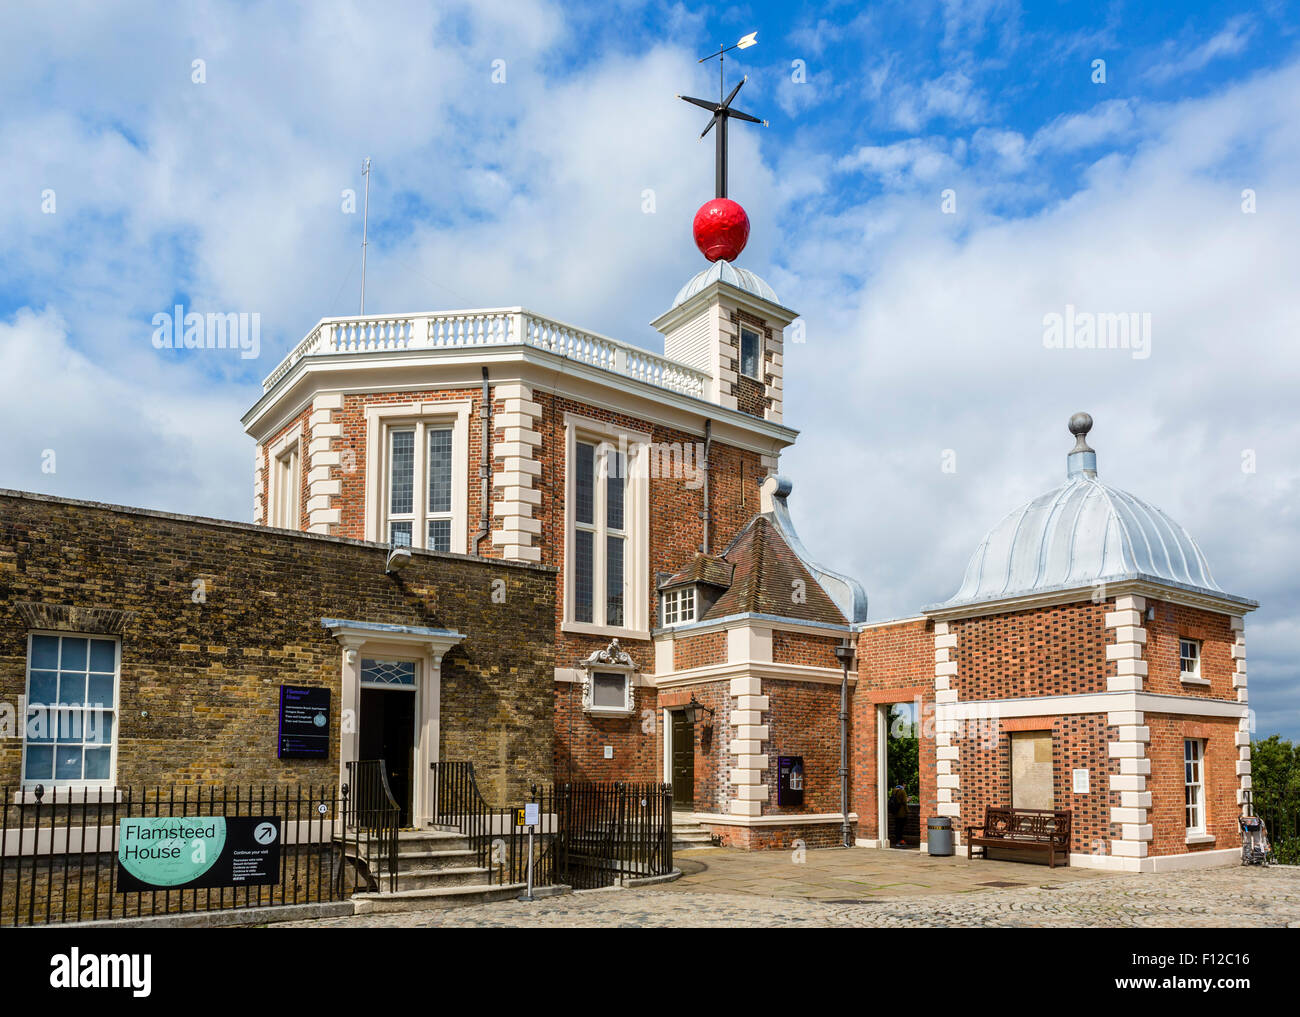 El Royal Observatory Greenwich (Flamsteed House), con el tiempo la bola roja en el techo, Londres, Inglaterra, Reino Unido. Foto de stock